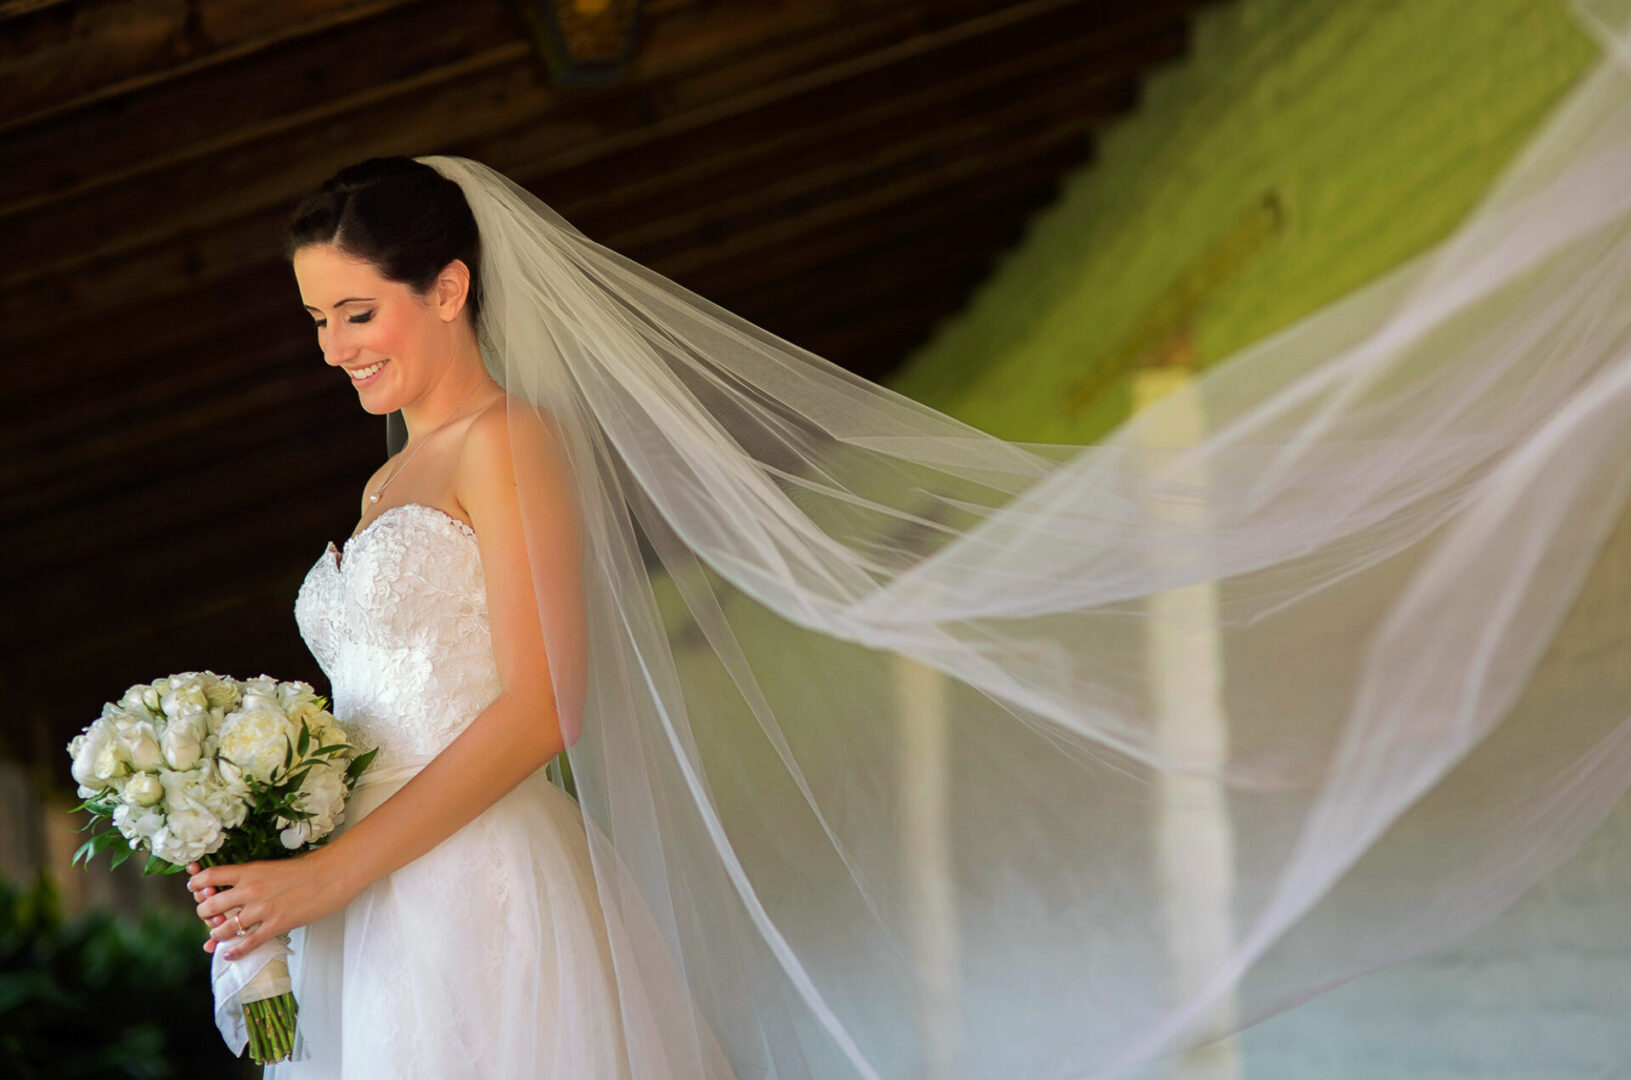 A beautiful bride wearing a white dress